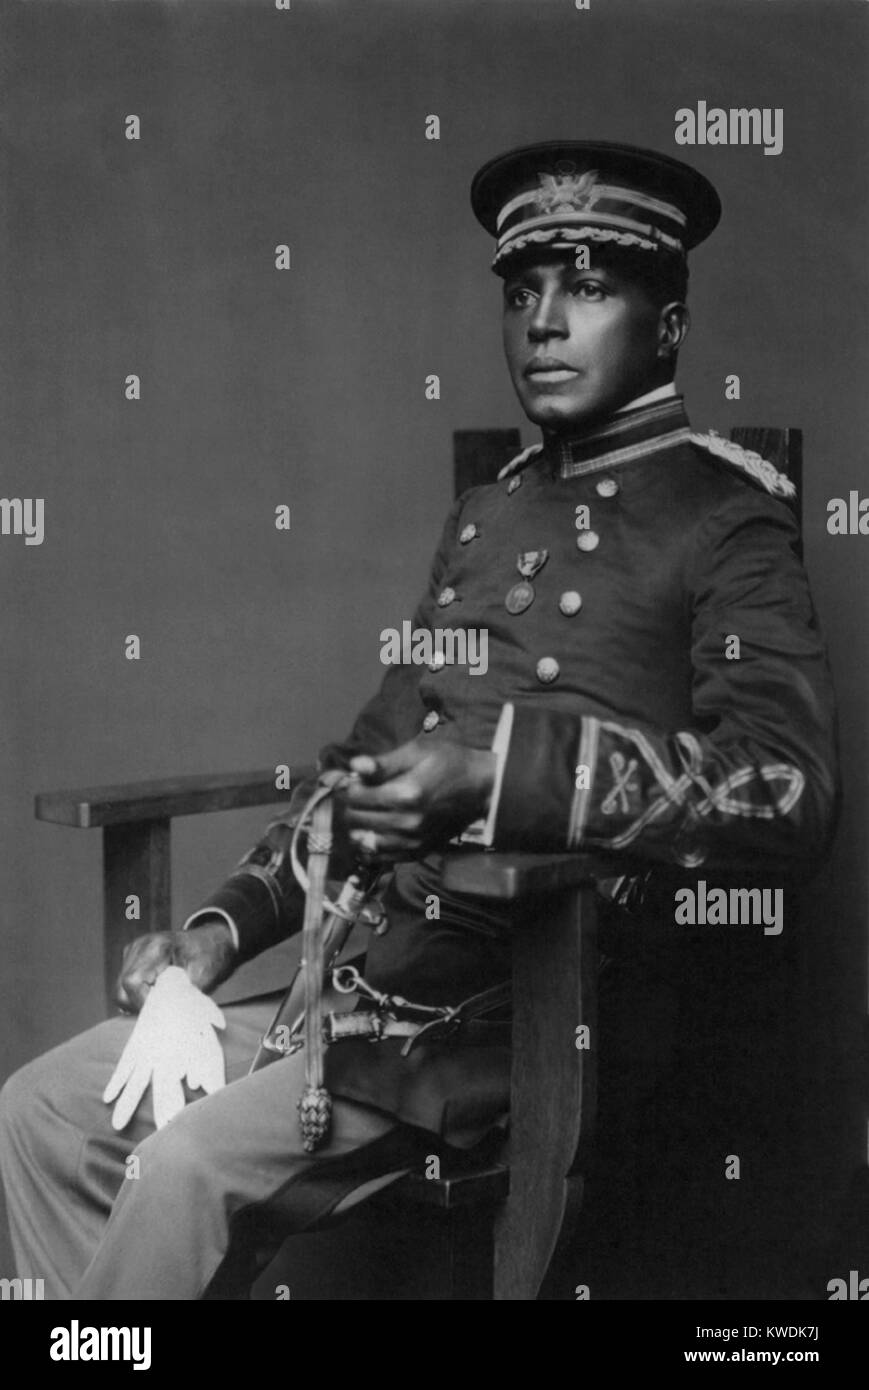 Charles Junge war das dritte Afrikanische Amerikanische zu Absolvent von West Point. Er hielt sich an den, den er Erniedrigung, soziale Isolation, und rassistische Diskriminierung während seiner Jahre an der Militärakademie. Nach dem Studium wurde er mit der 9 US-Kavallerie und Zehnten US-Kavallerie, die Buffalo Soldiers (BSLOC 2017 20 102) Stockfoto